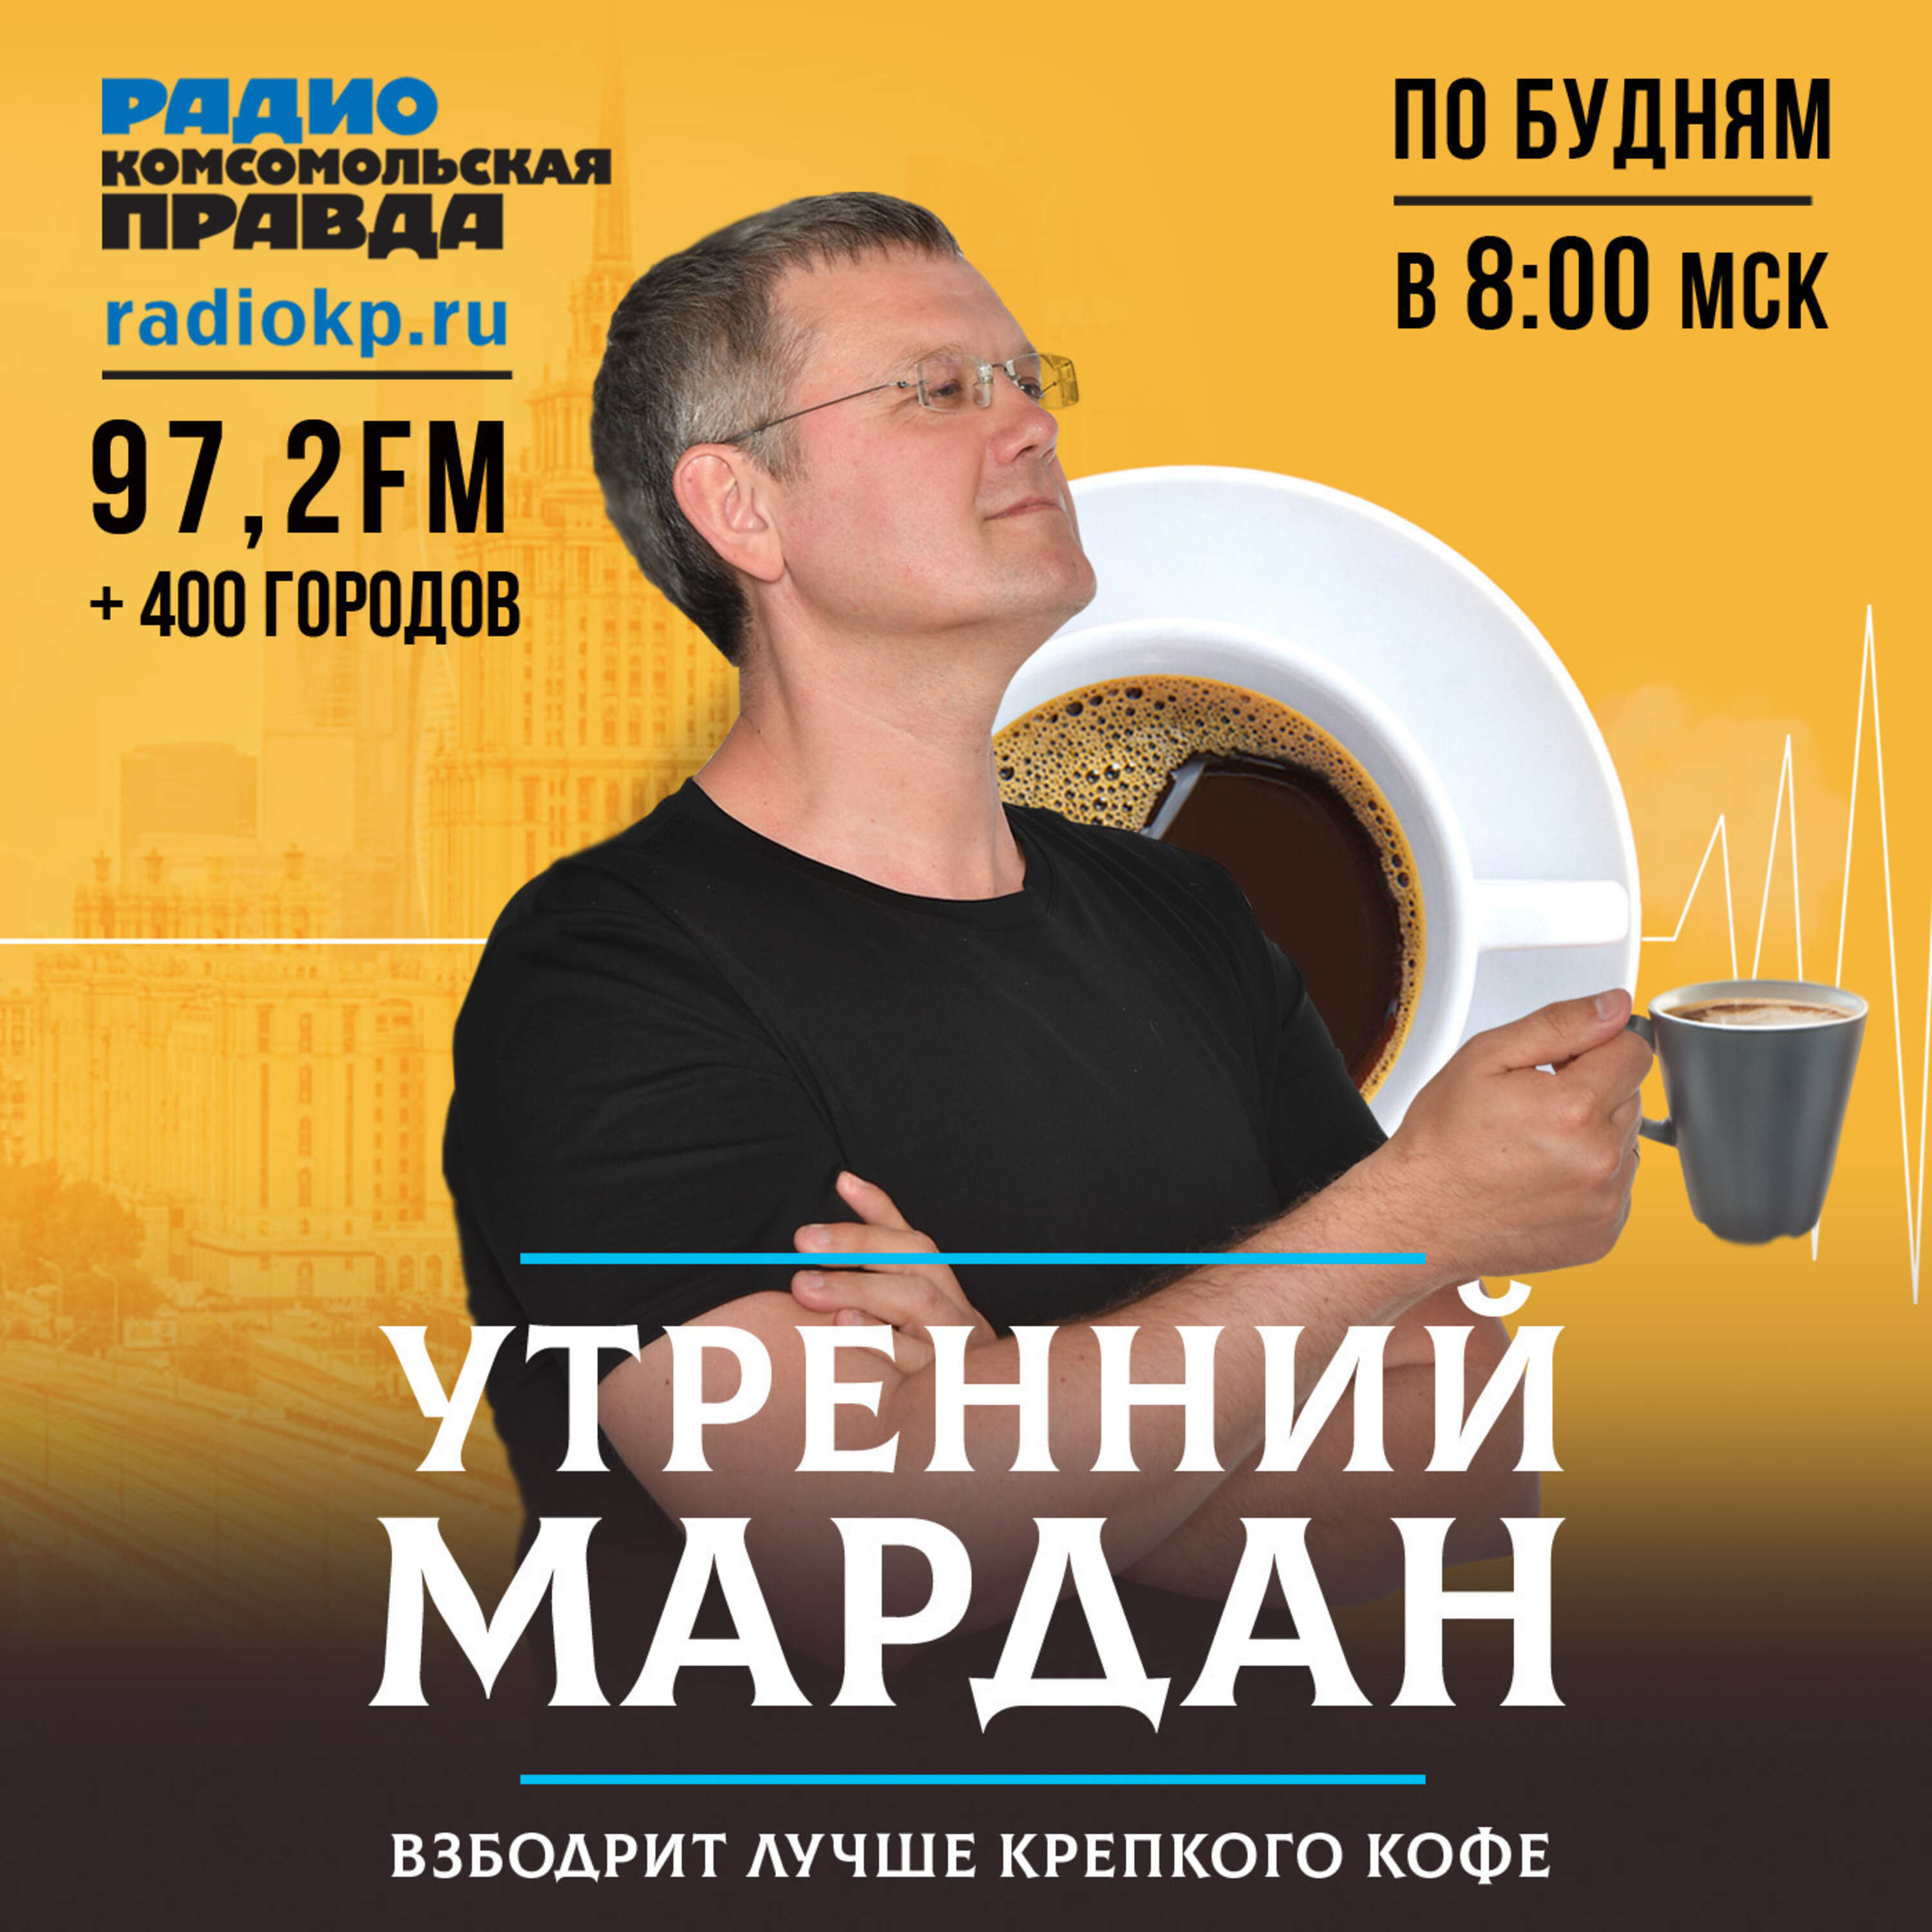 Утренний Мардан:Радио «Комсомольская правда»